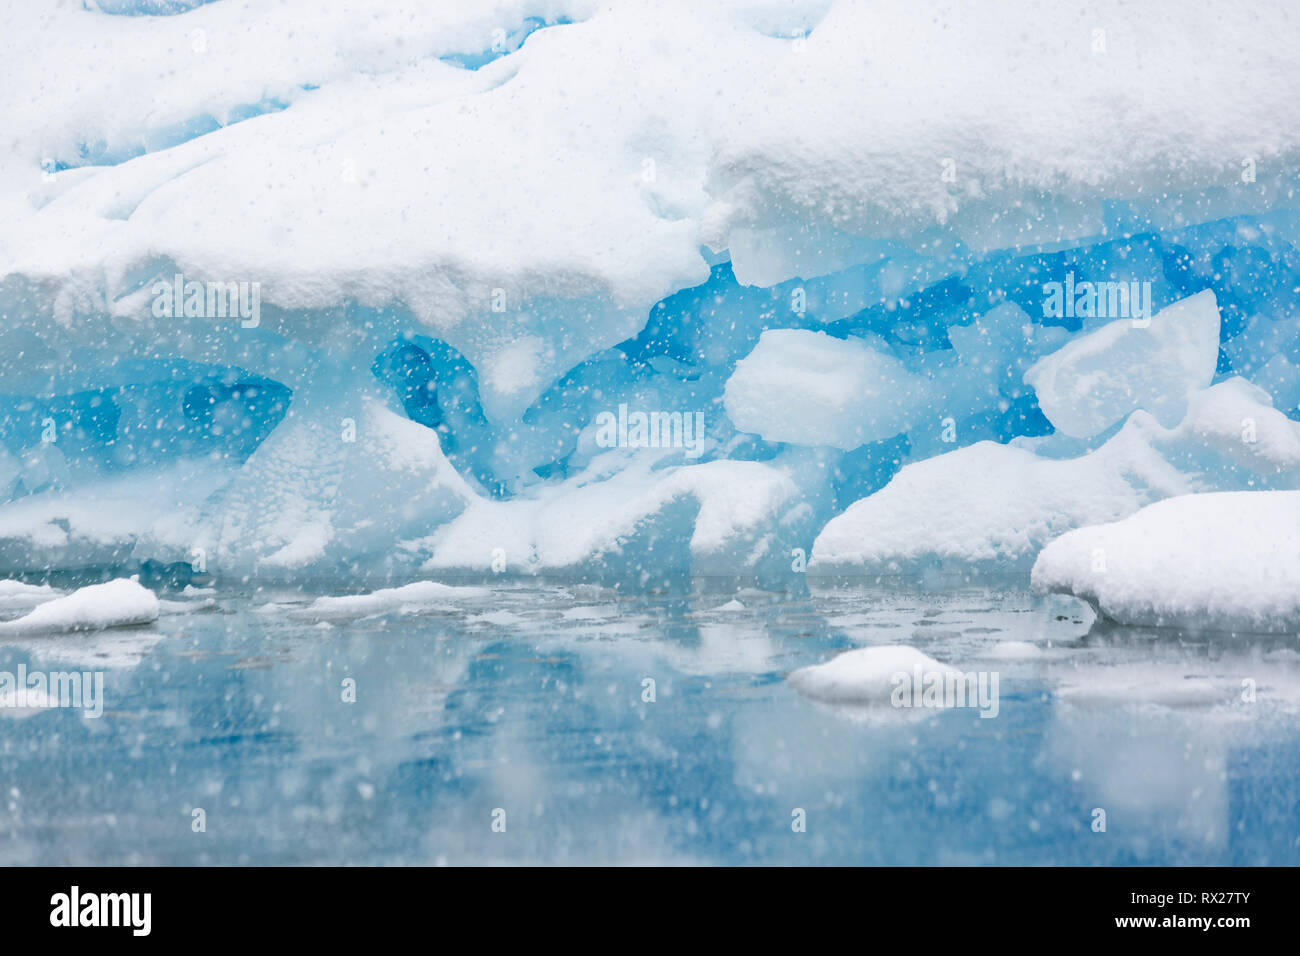 Un iceberg di messa a terra viene lentamente coperta di neve da una tempesta estiva vicino a Pleneau Island, Pleneau Island, Lemaire Channel, Penisola Antartica Foto Stock